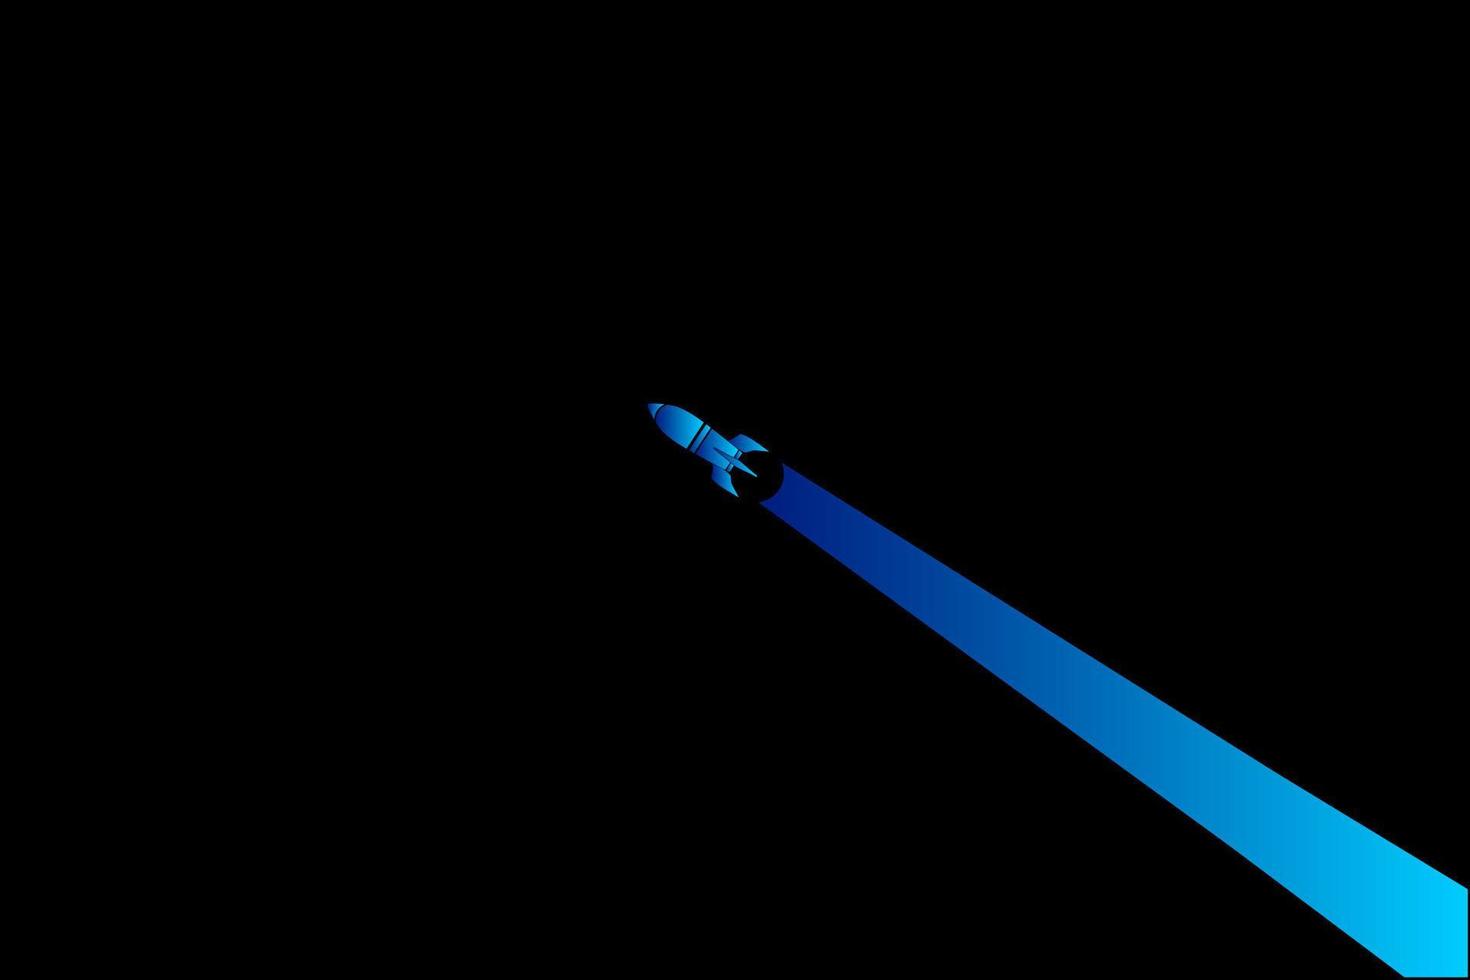 Cohete la línea de la nave espacial galaxy pop art potrait logo diseño colorido con fondo oscuro. ilustración vectorial abstracta. papel pintado minimalista oscuro vector